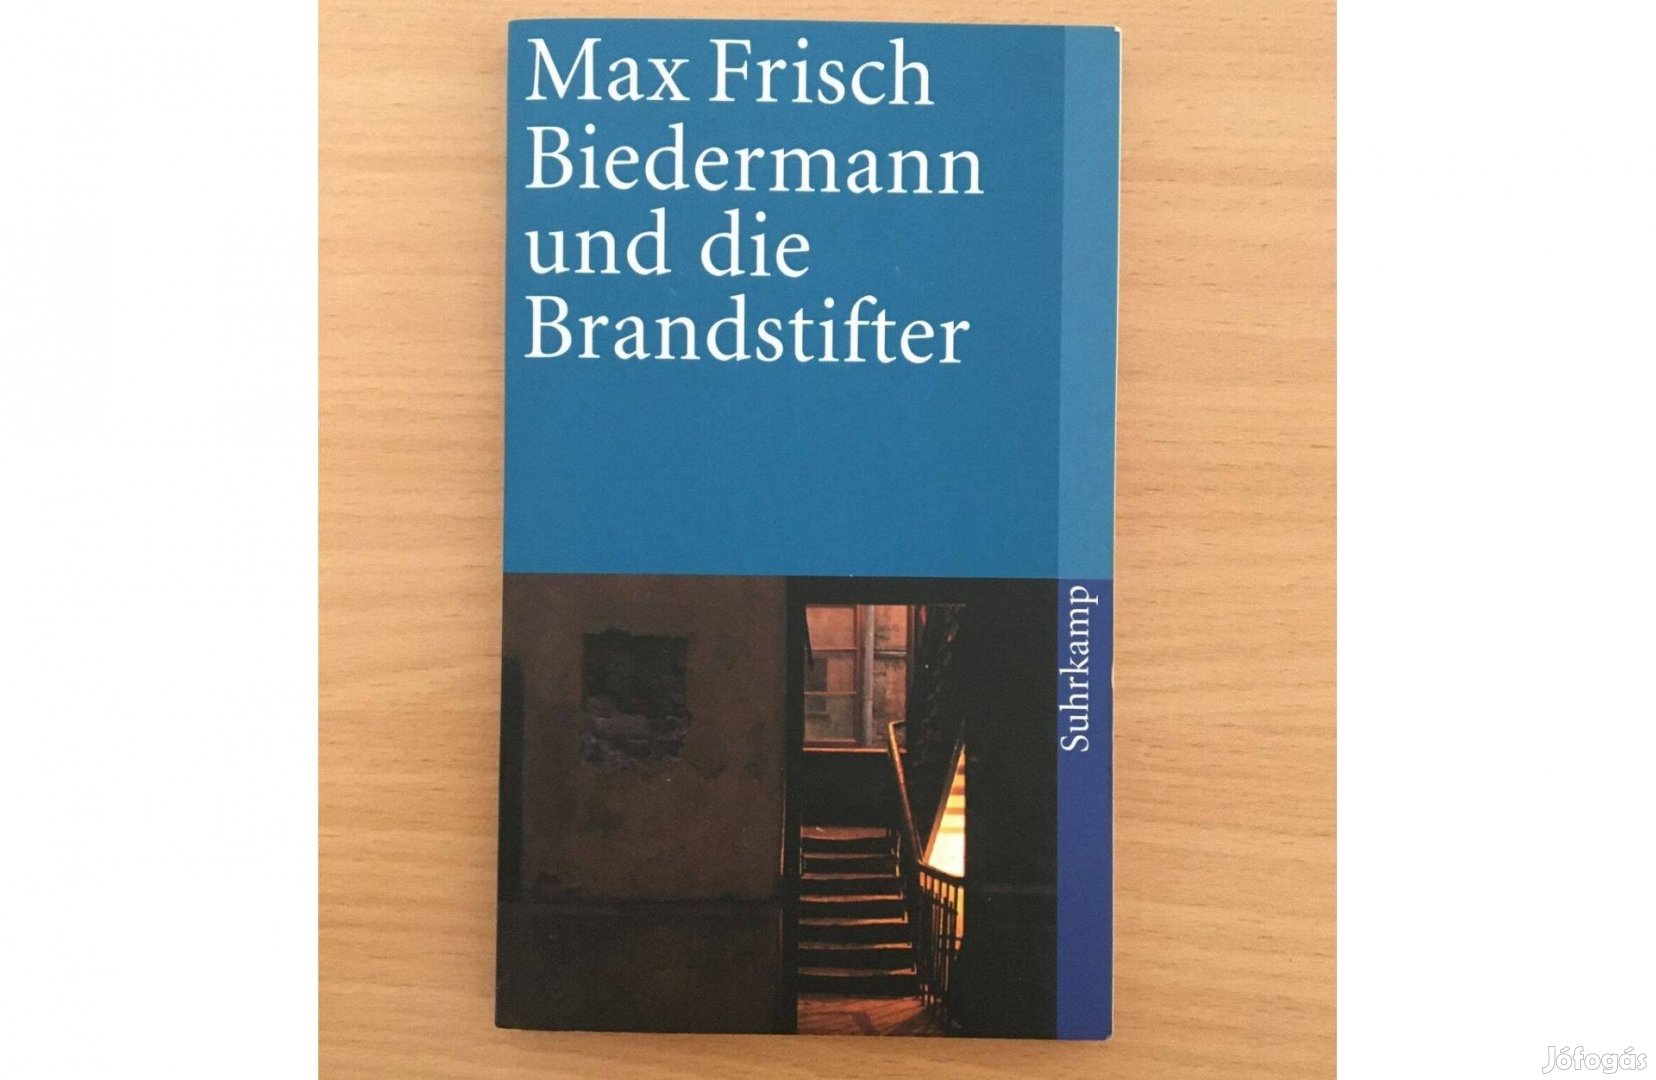 Max Frisch: Biedermann und die Brandstifter című, német nyelvű könyv